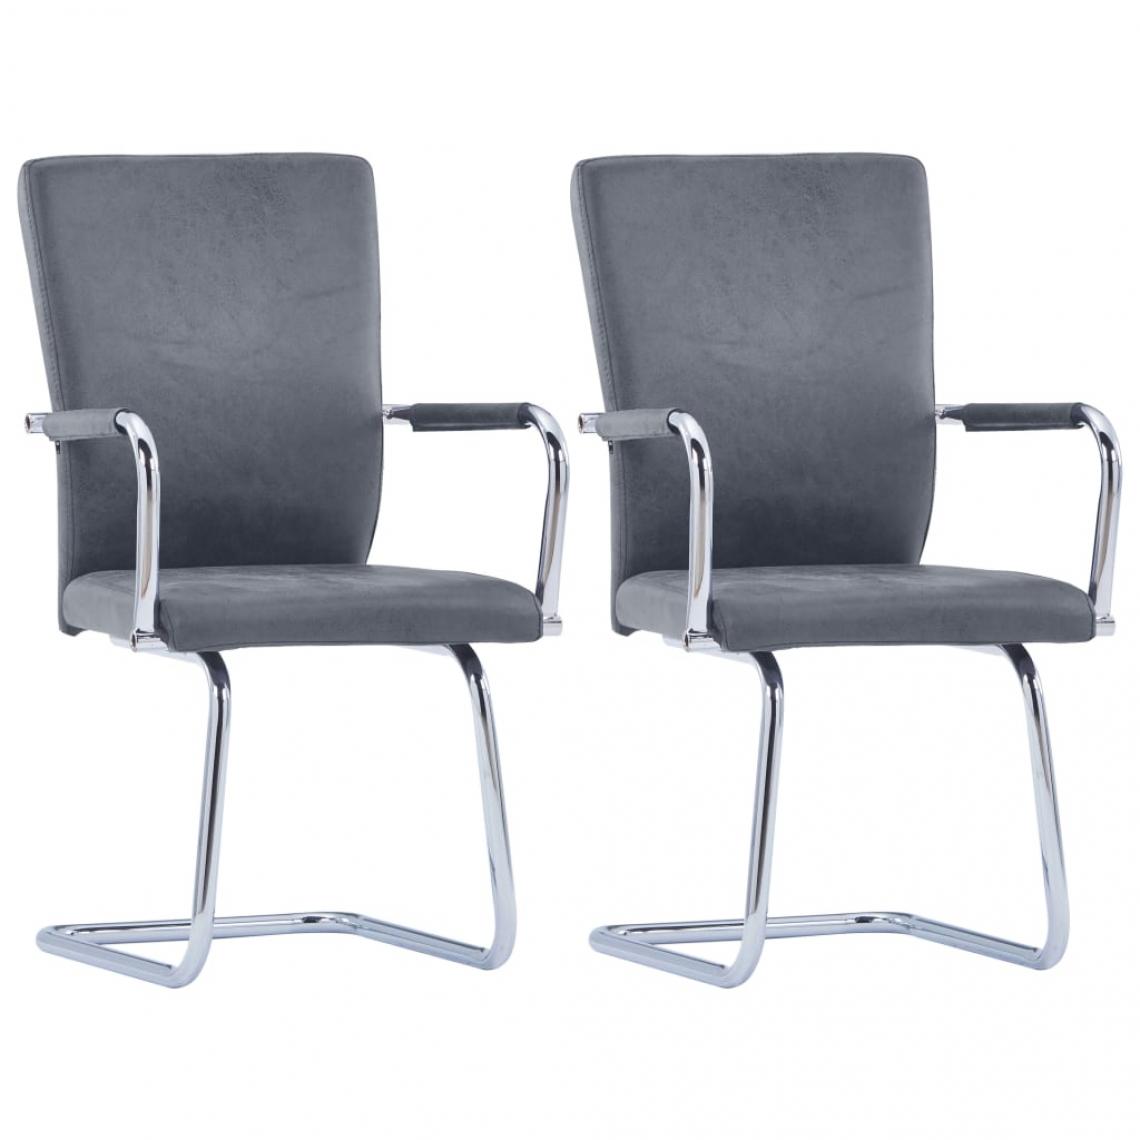 Decoshop26 - Lot de 2 chaises de salle à manger cuisine cantilever design classique similicuir gris suède CDS020342 - Chaises